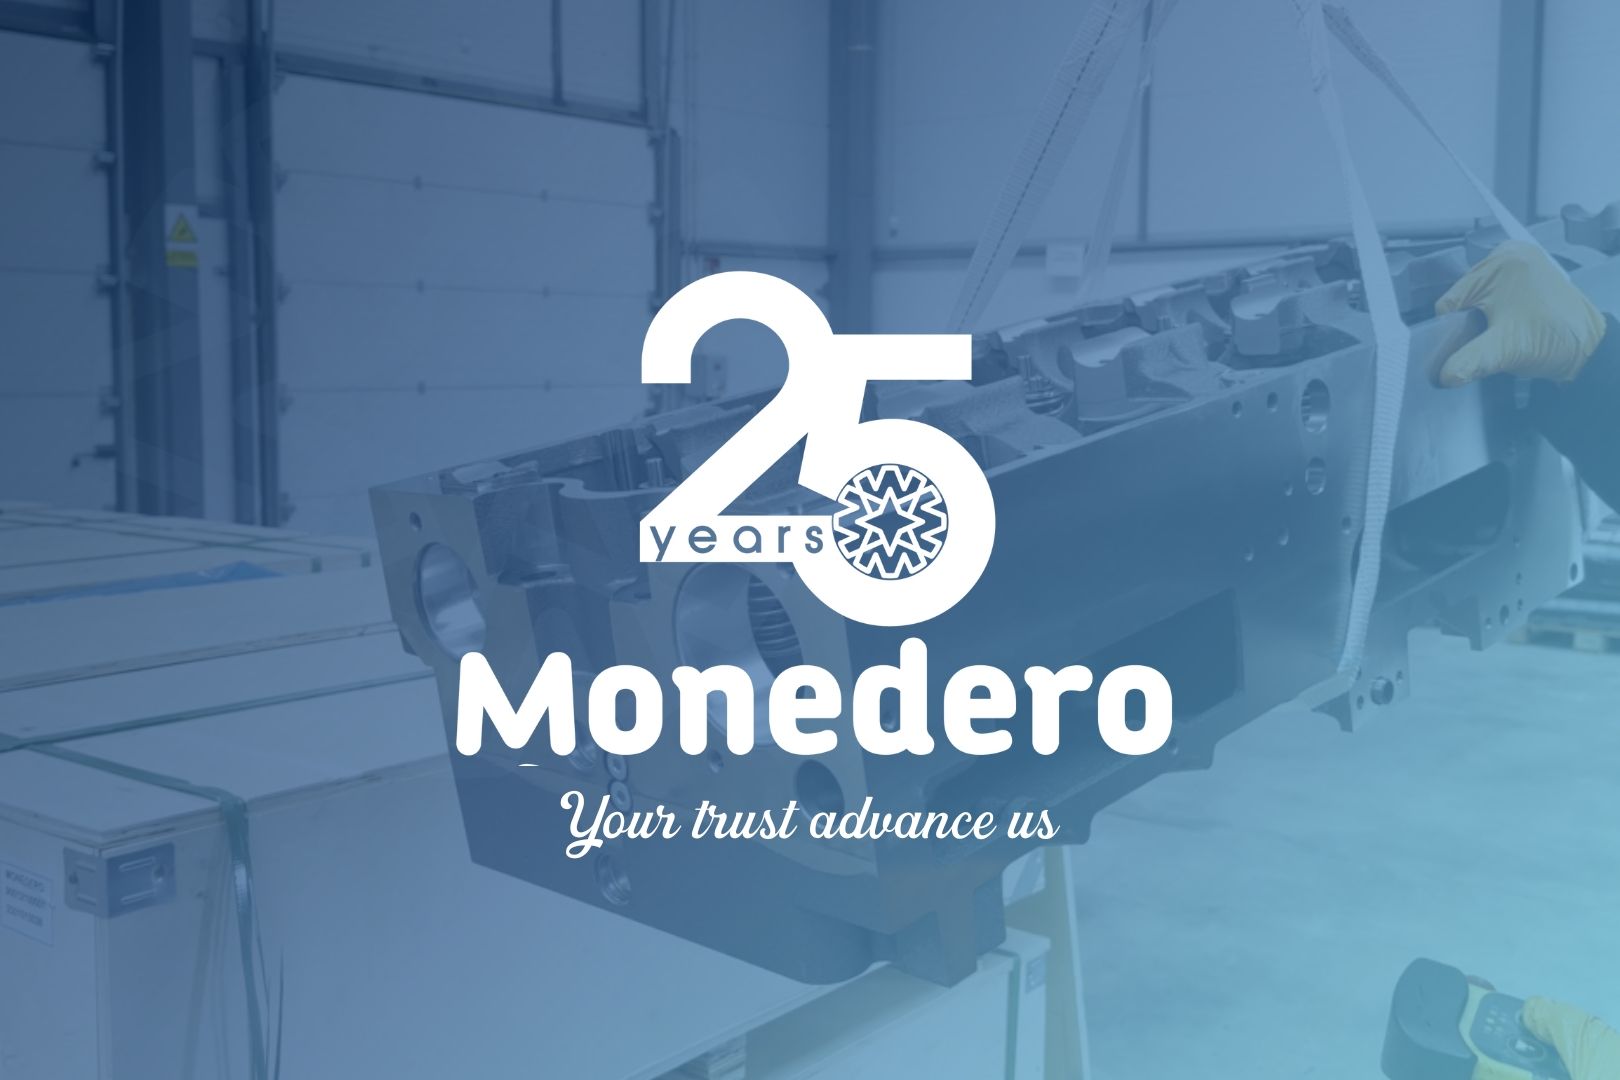 25th anniversary of Auto Comercial Monedero